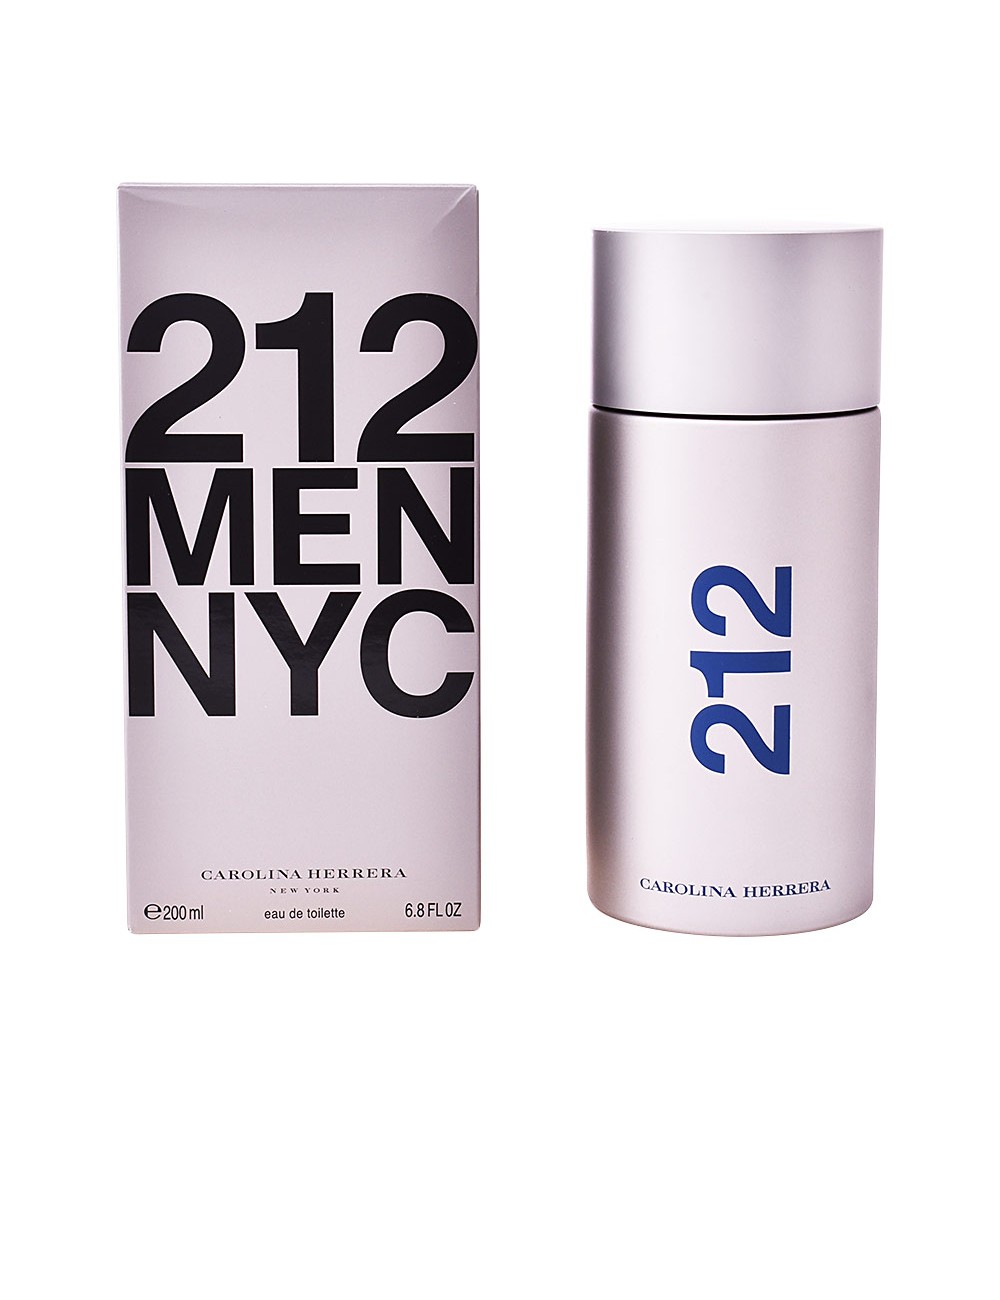 212 NYC MEN eau de toilette vaporisateur NE96127